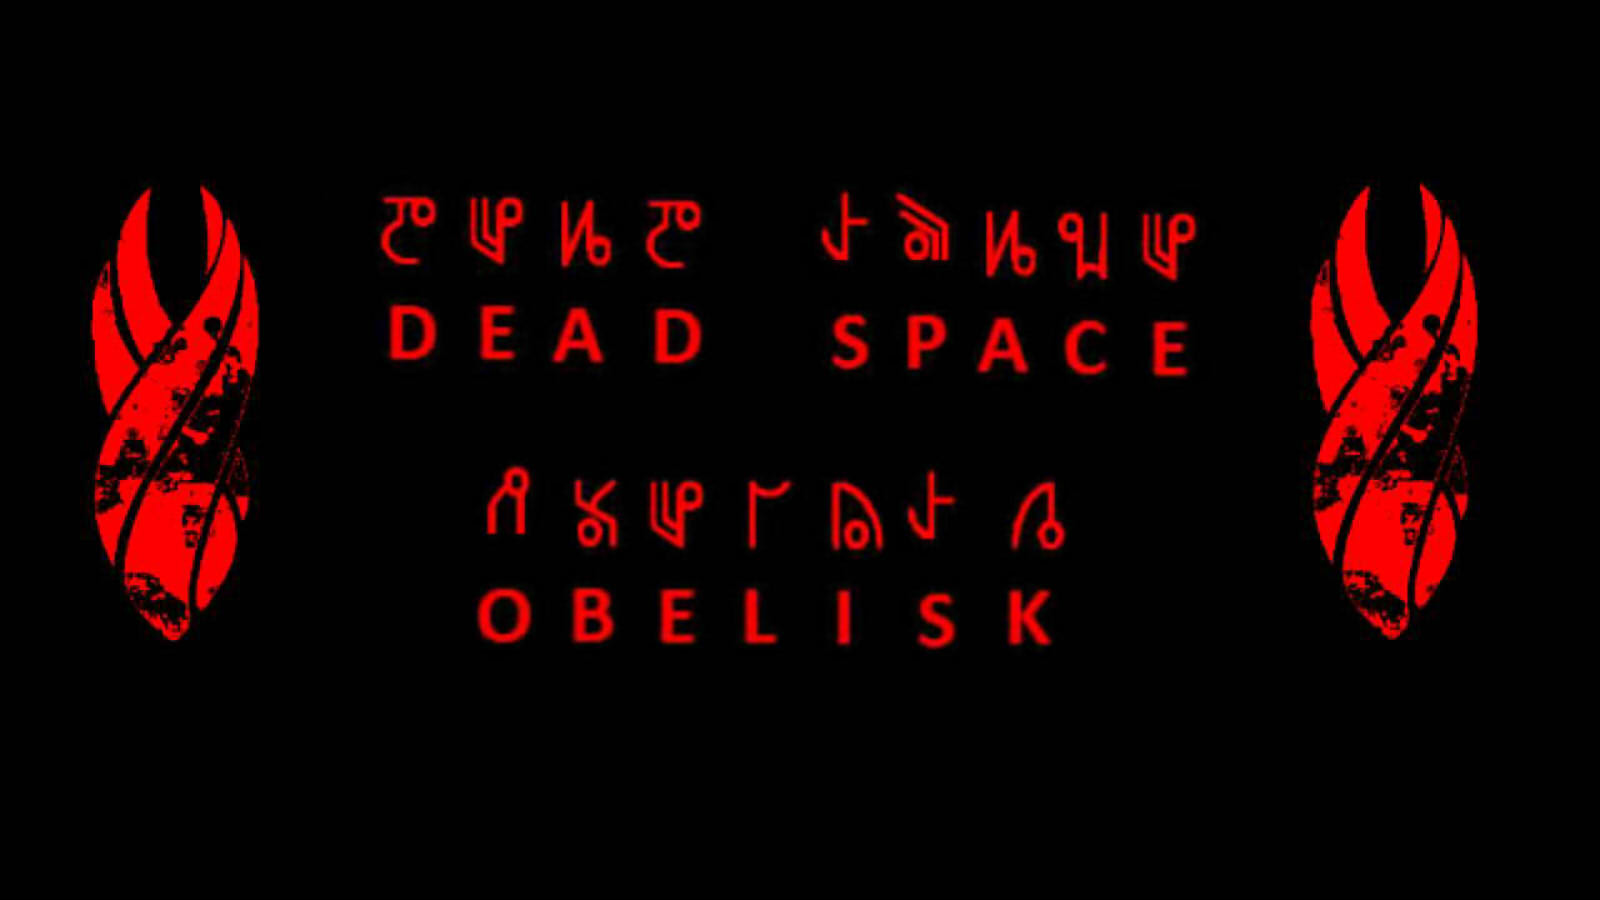 Dead Spase: Obelisk